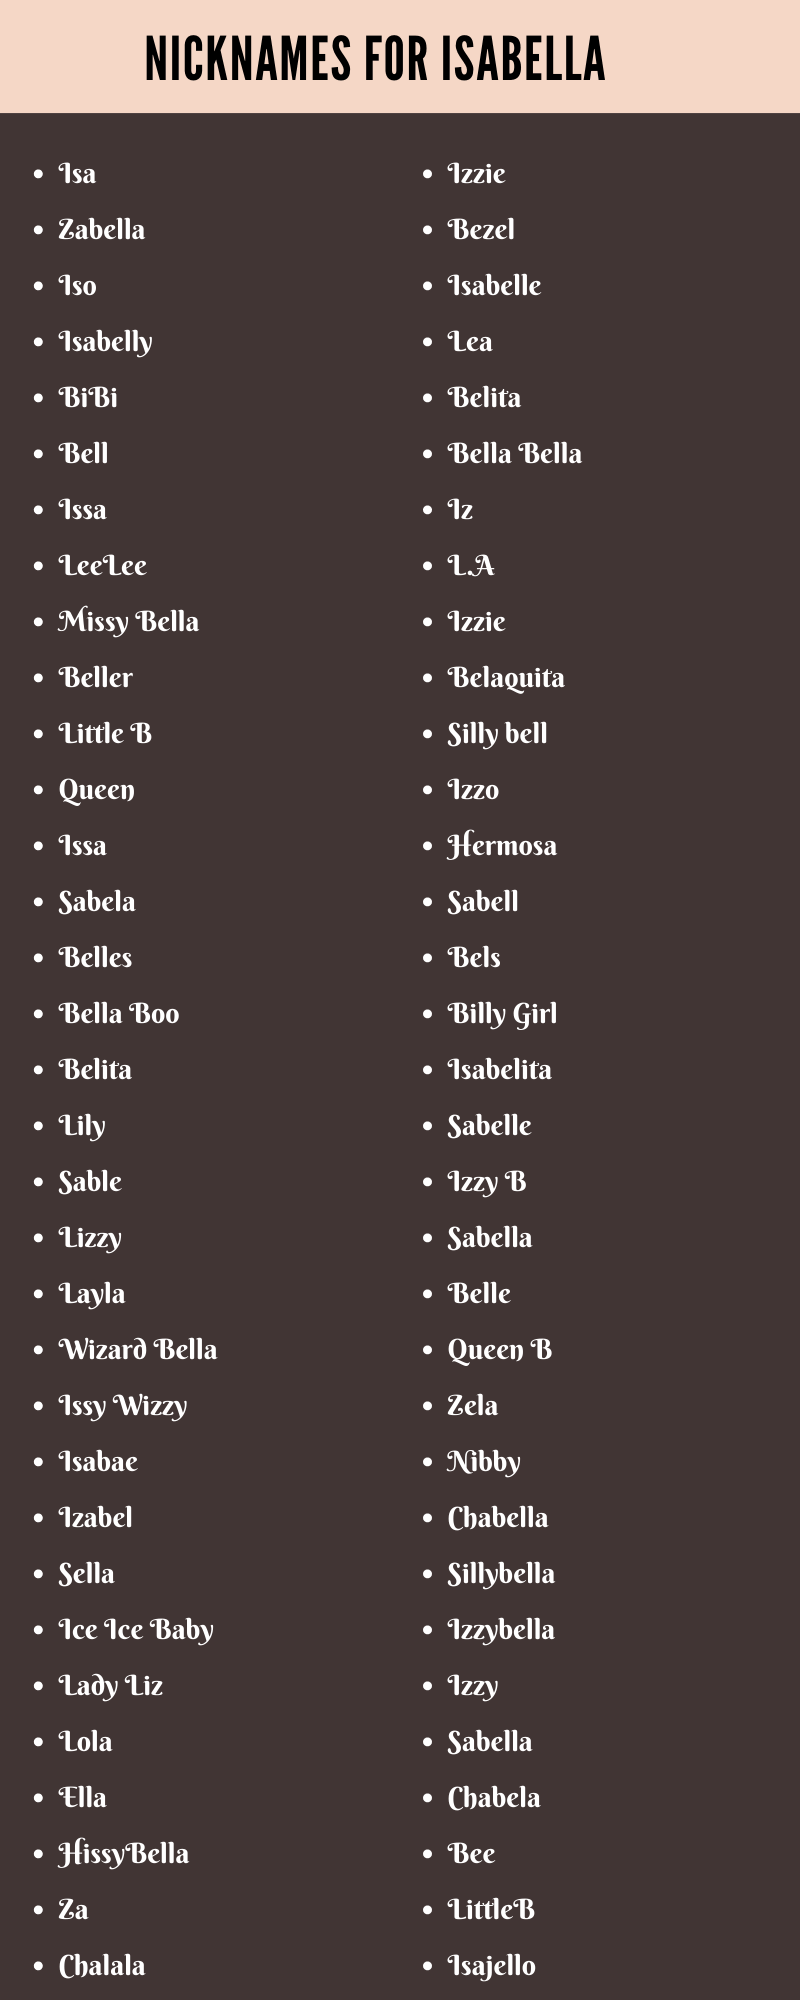 Isabella Nicknames